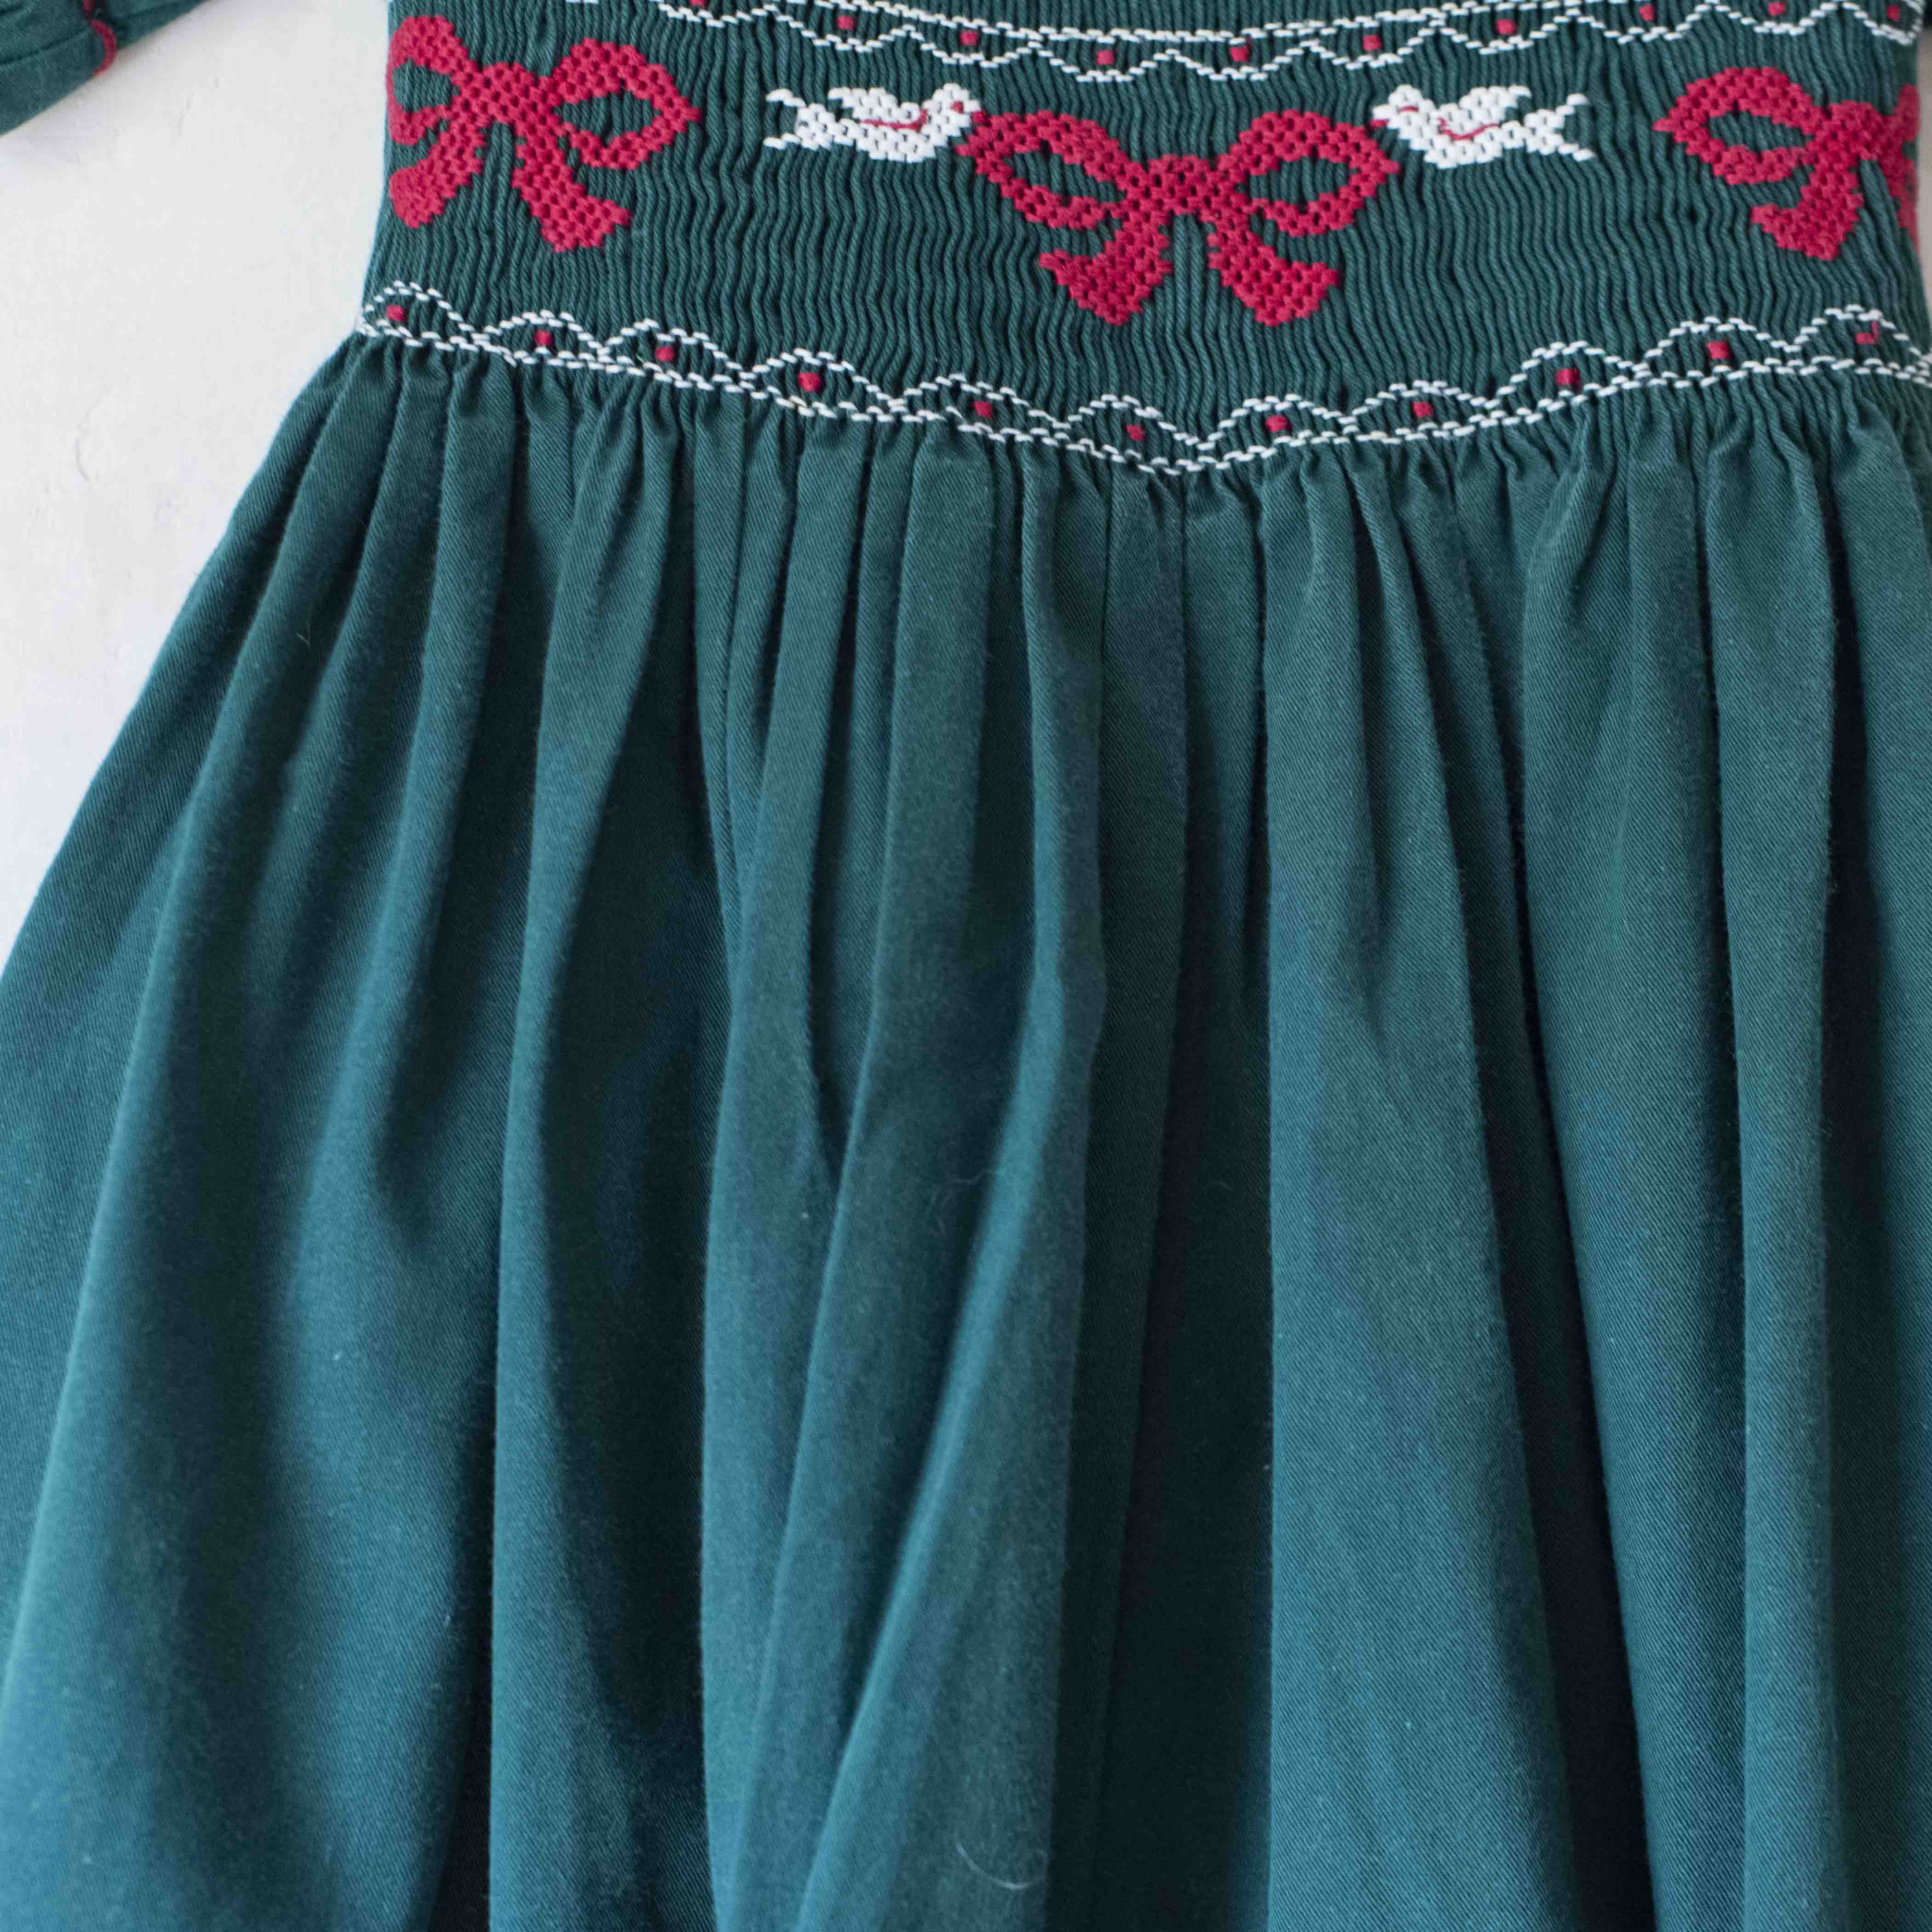 שמלה ירוקה עם רקמת פפיונים וציפורים | 4-5 שנים